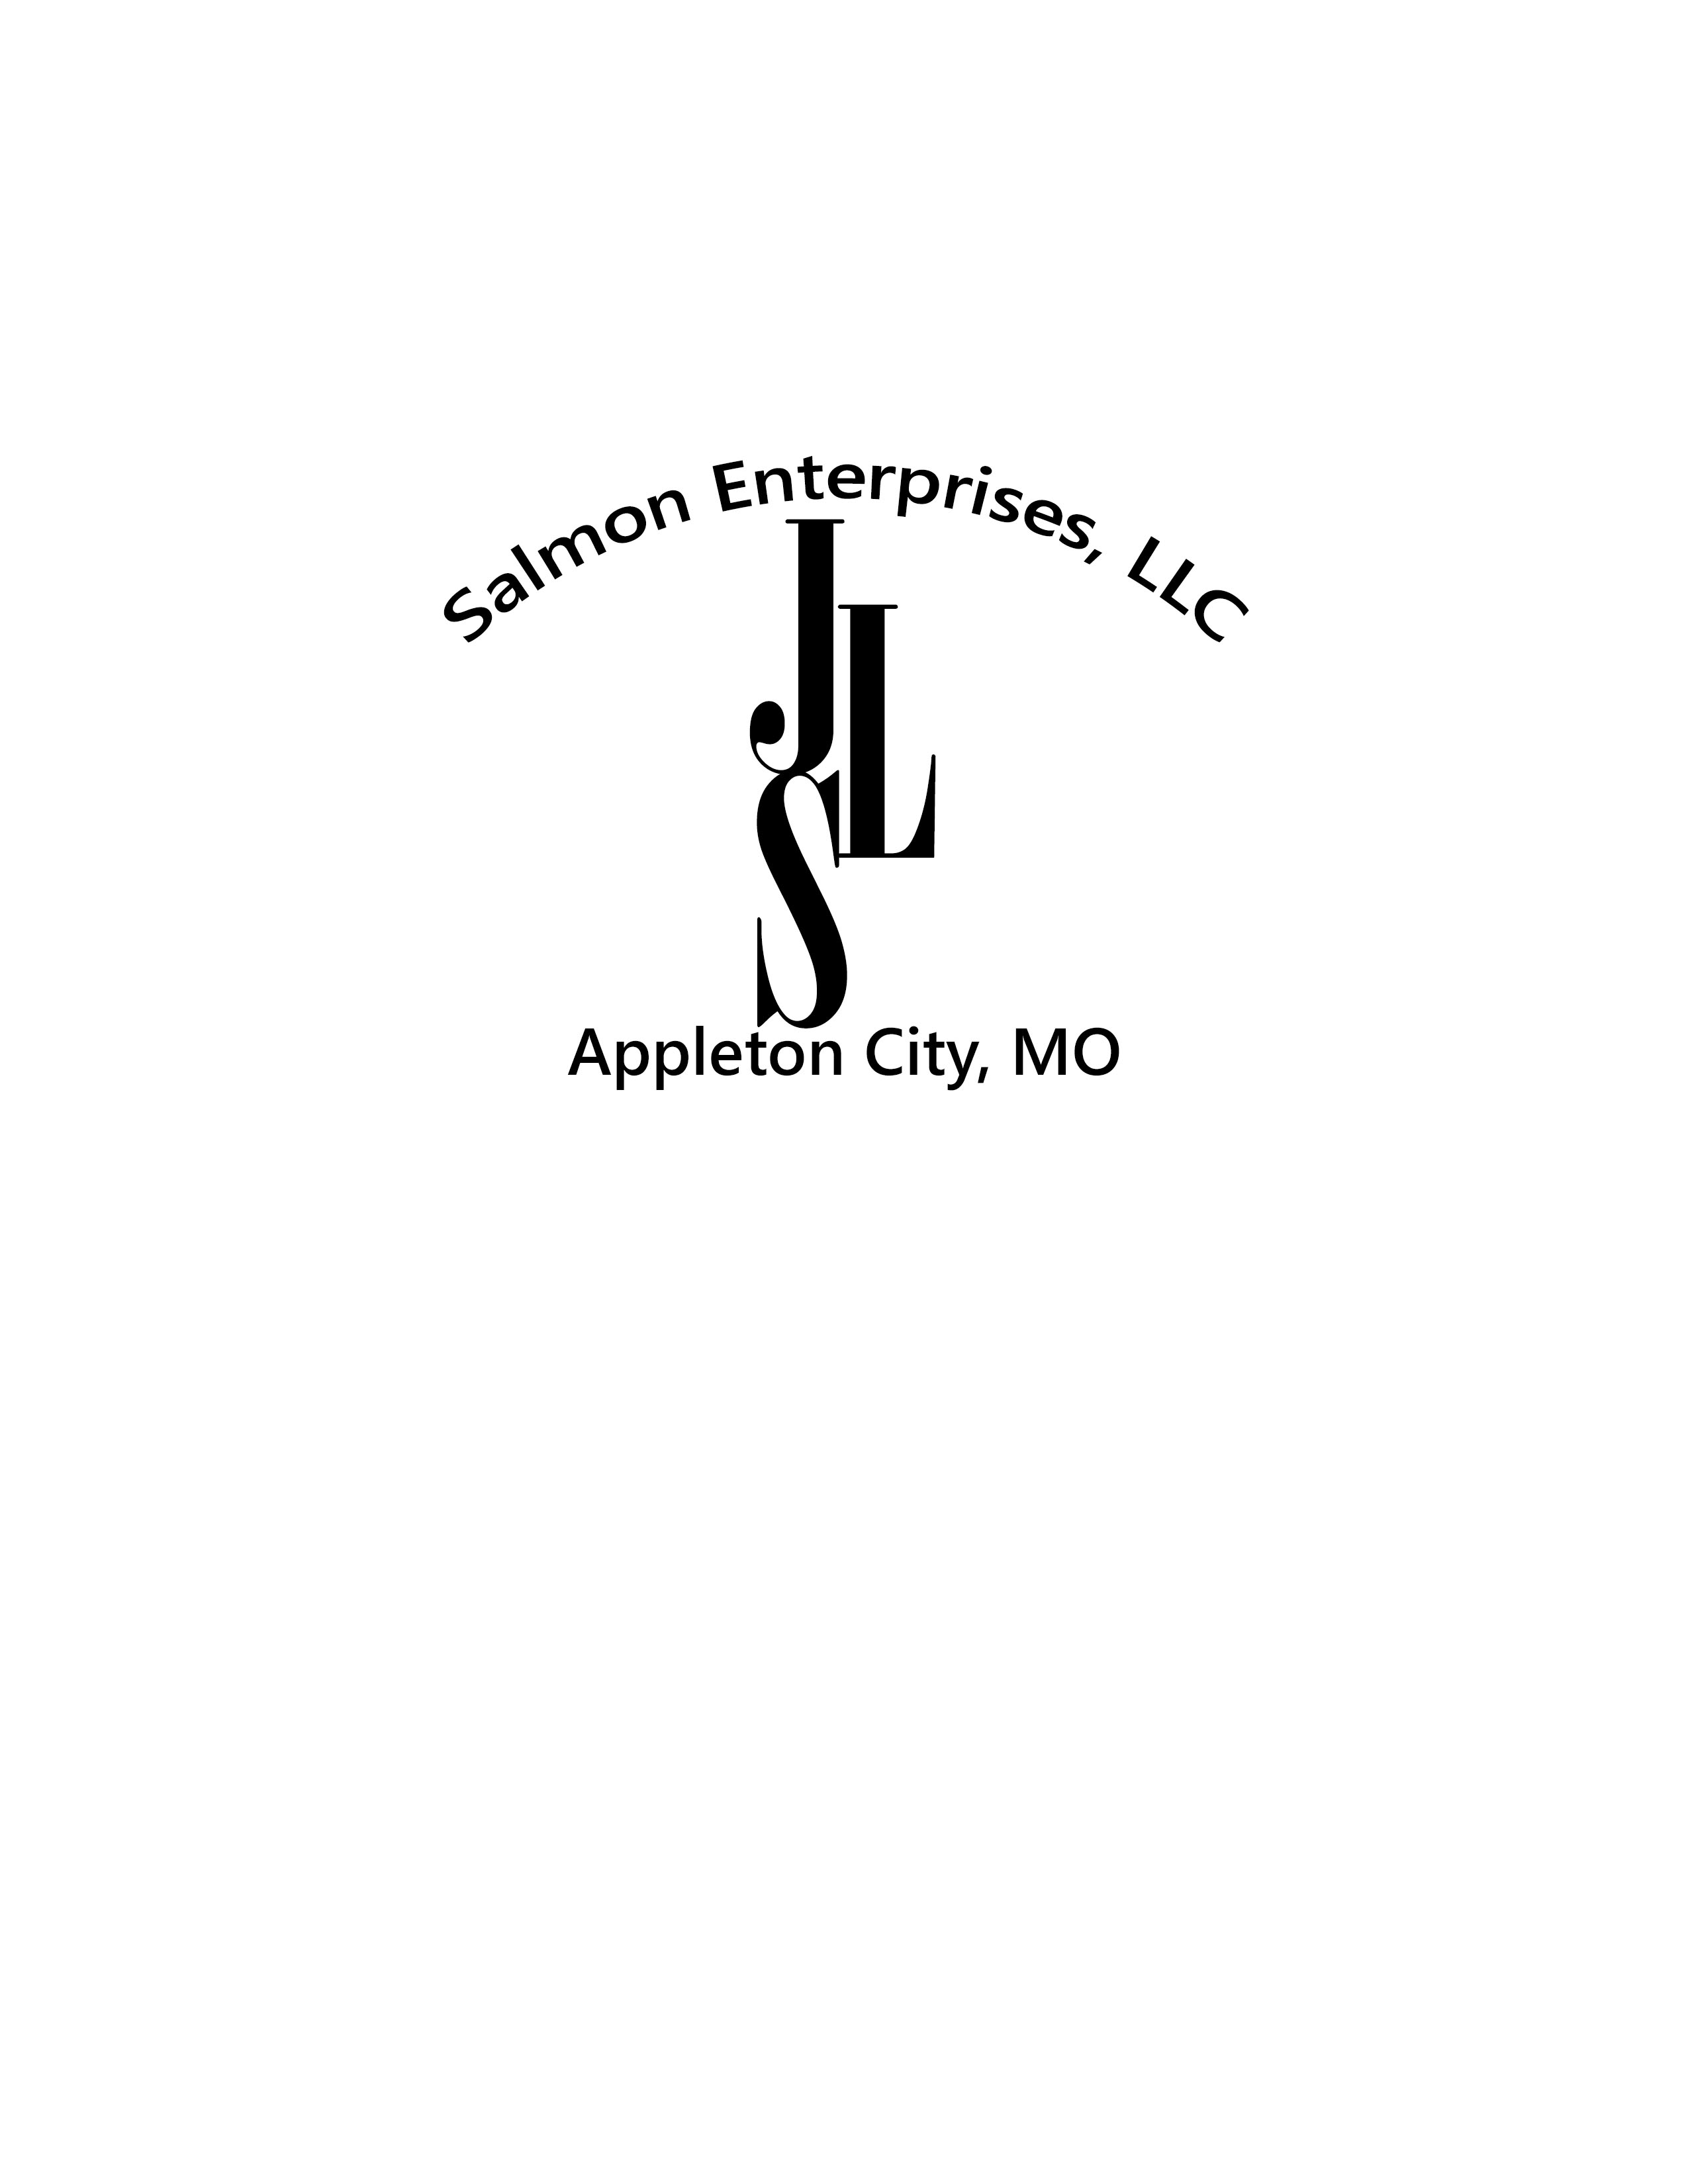 Salmon Enterprises, LLC logo 